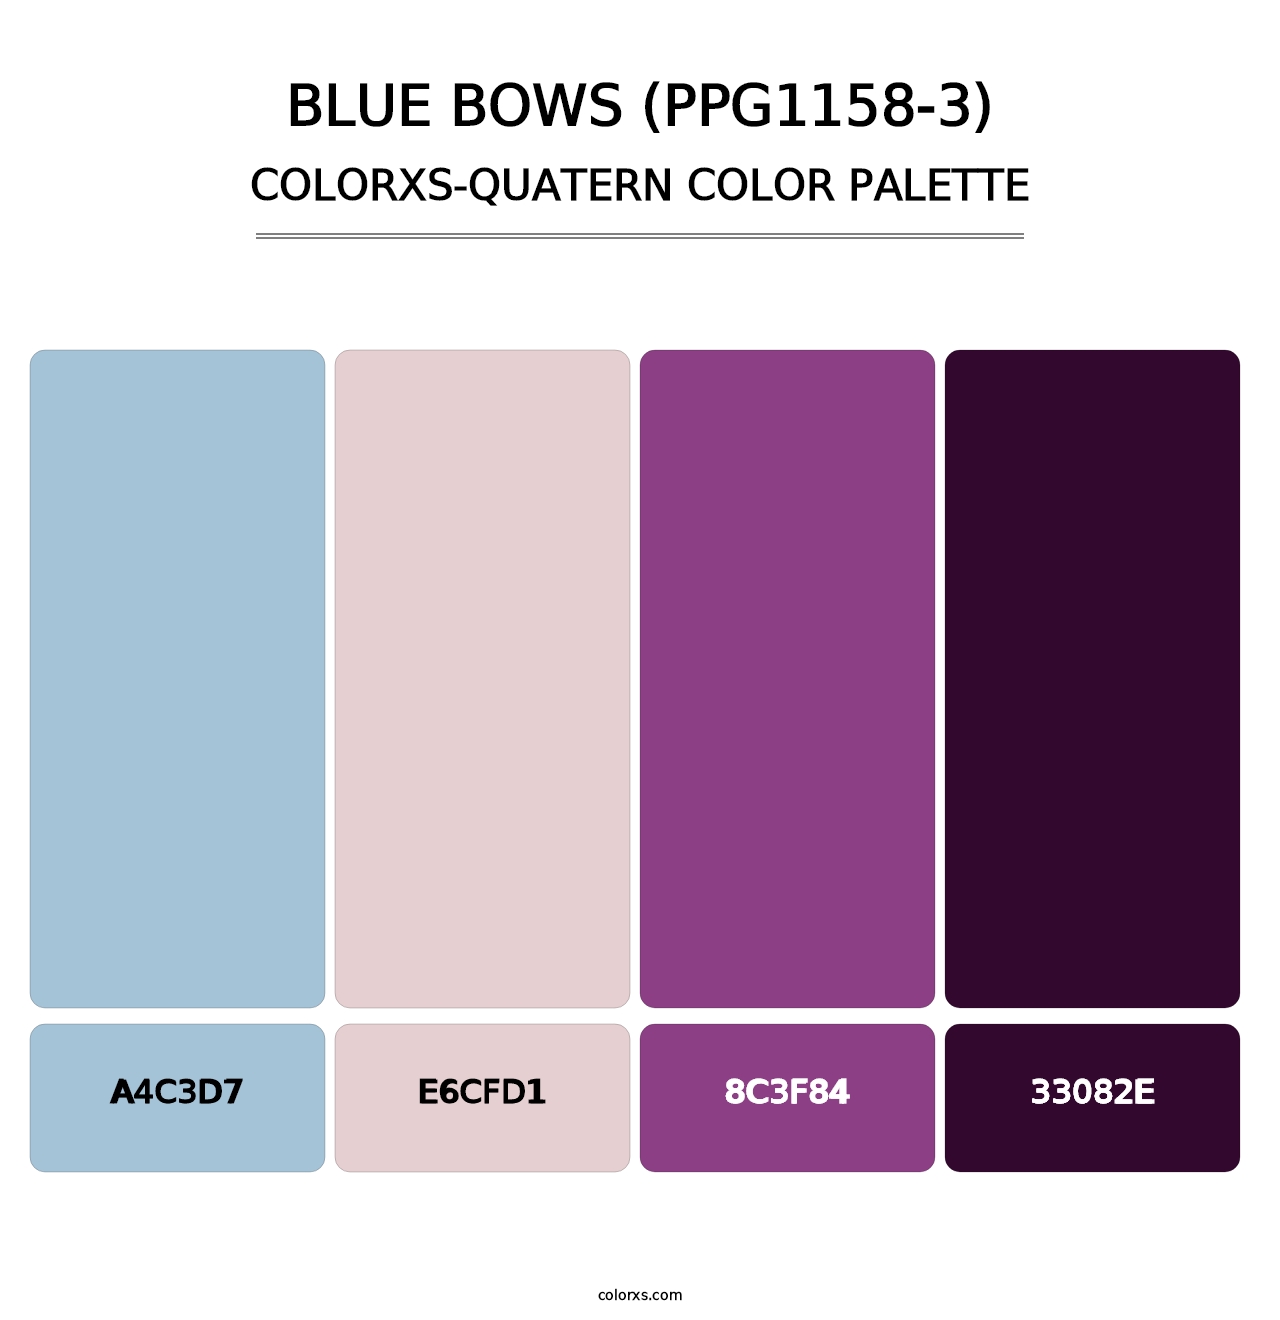 Blue Bows (PPG1158-3) - Colorxs Quatern Palette